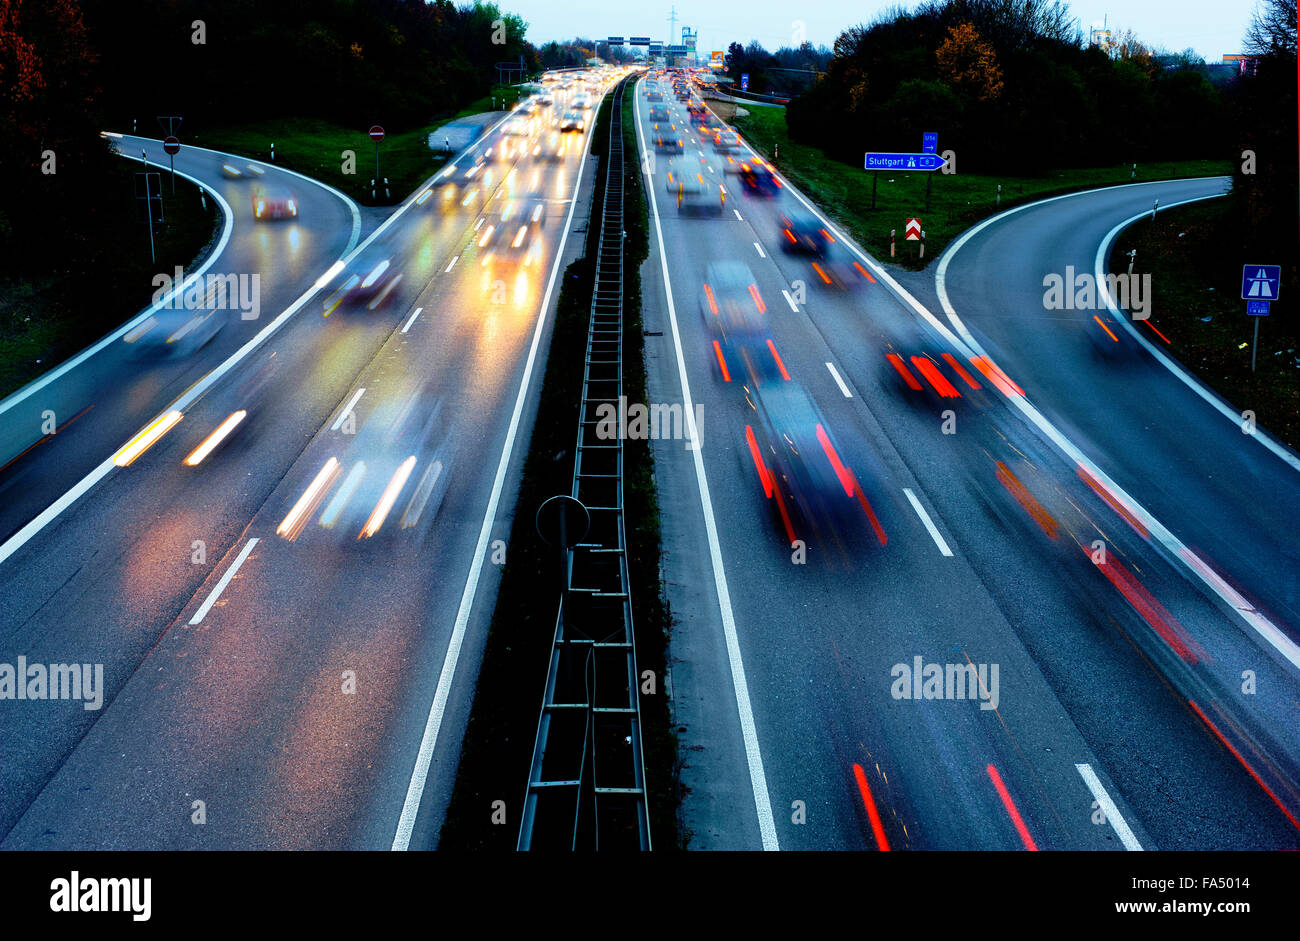 Les voitures sur l'autoroute Autobahn en Allemagne en grande vitesse dans la nuit Banque D ...